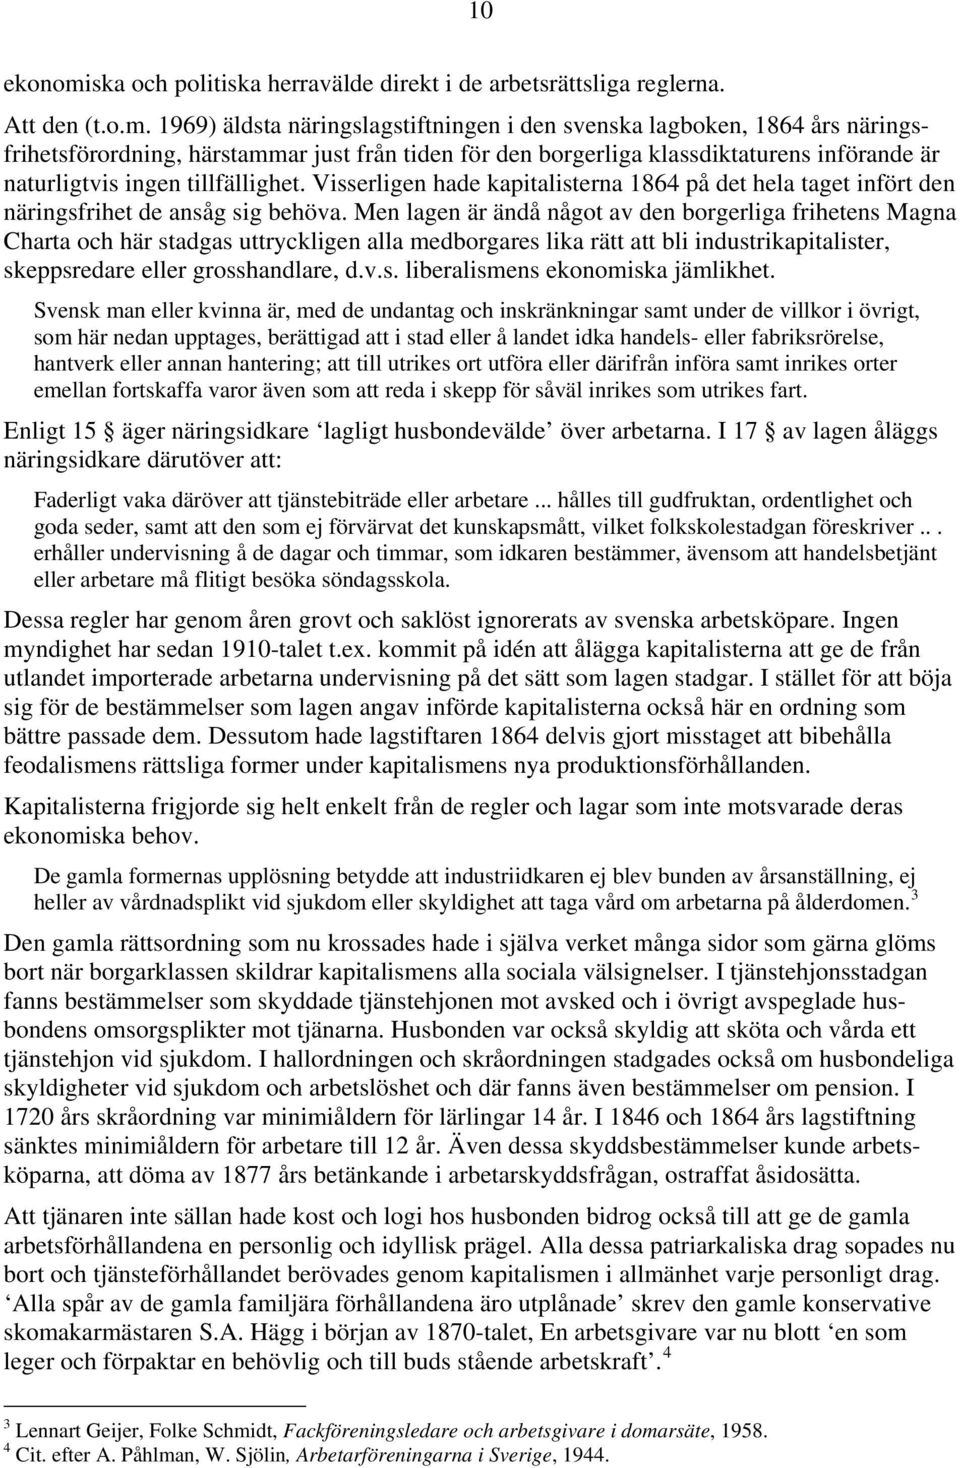 1969) äldsta näringslagstiftningen i den svenska lagboken, 1864 års näringsfrihetsförordning, härstammar just från tiden för den borgerliga klassdiktaturens införande är naturligtvis ingen